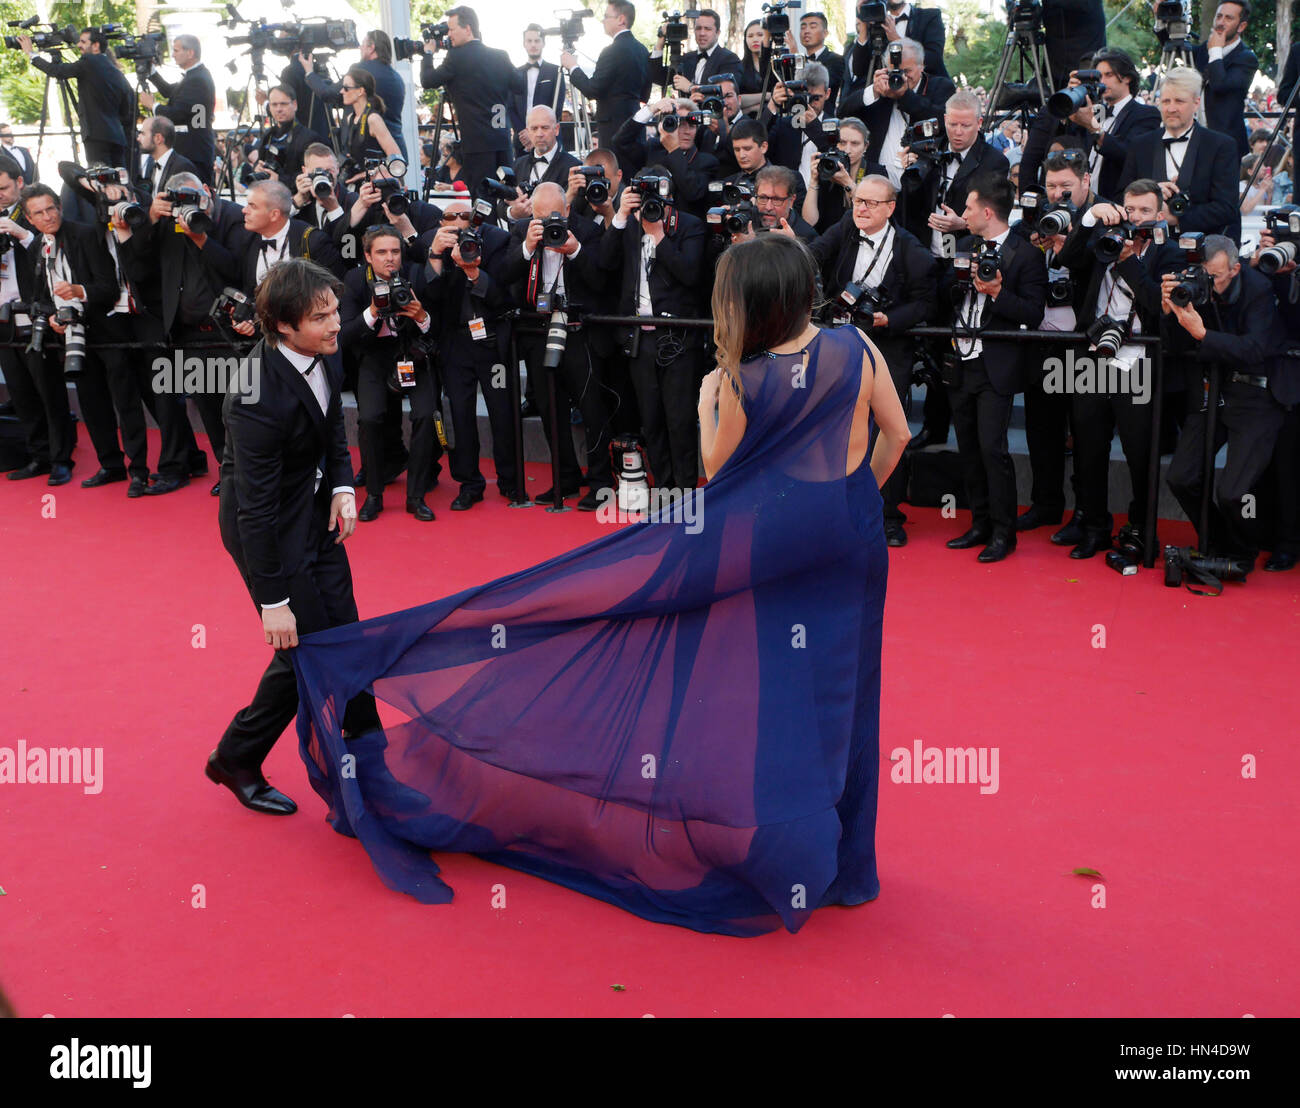 Nikki Reed e Ian Somerhalder arrivare alla premiere per il film "Gioventù" al 68esimo Festival del Cinema di Cannes il 20 maggio 2015 a Cannes, Francia. Foto di Francesco Specker Foto Stock